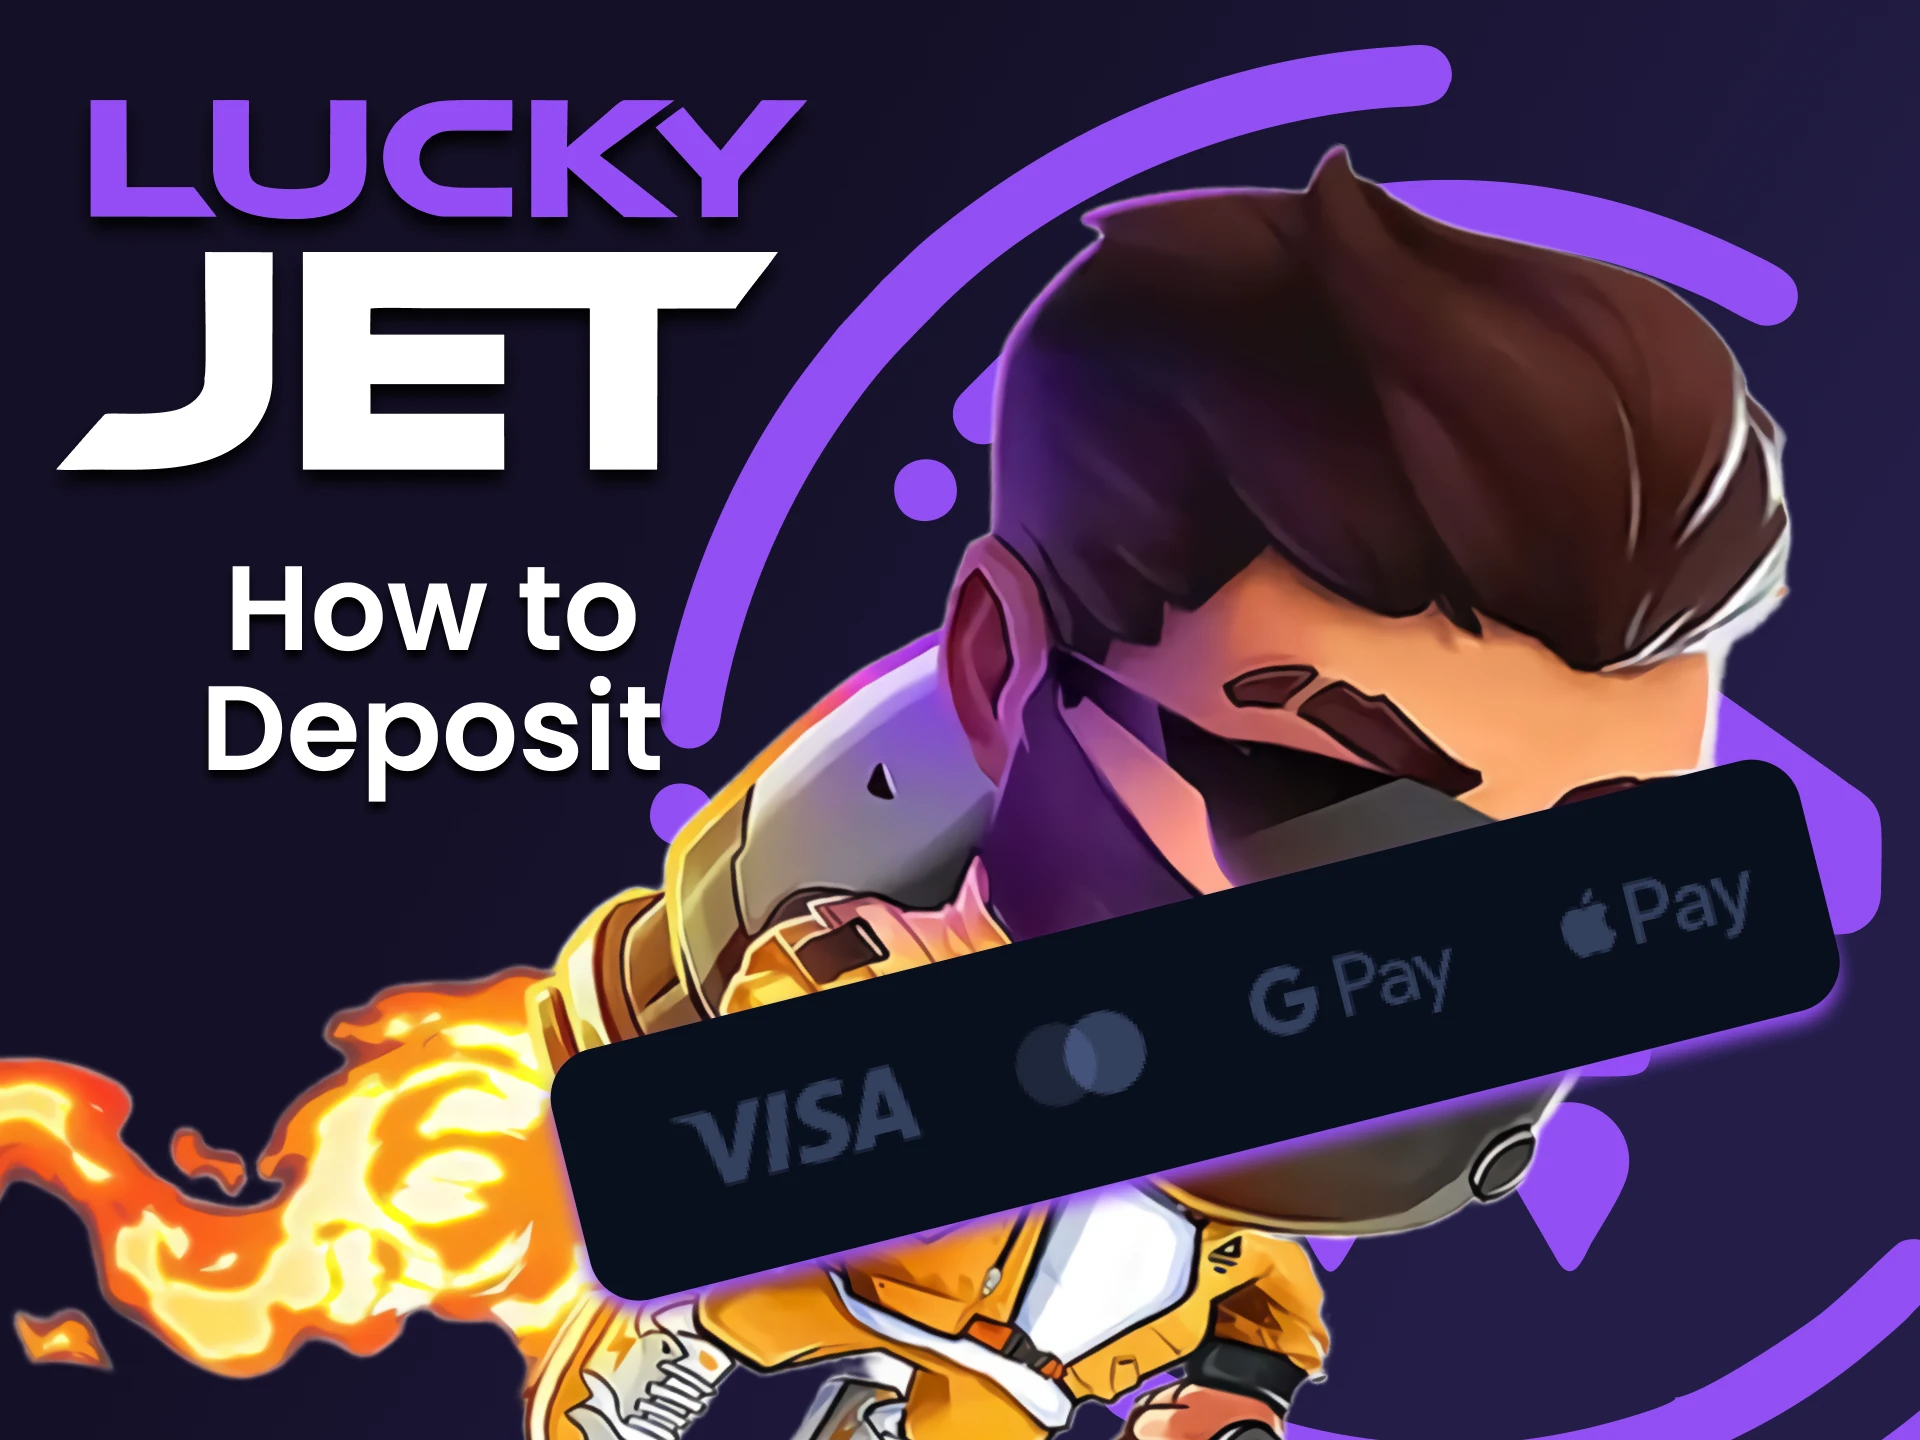 Choisissez un moyen pratique de reconstituer votre dépôt pour Lucky Jet.